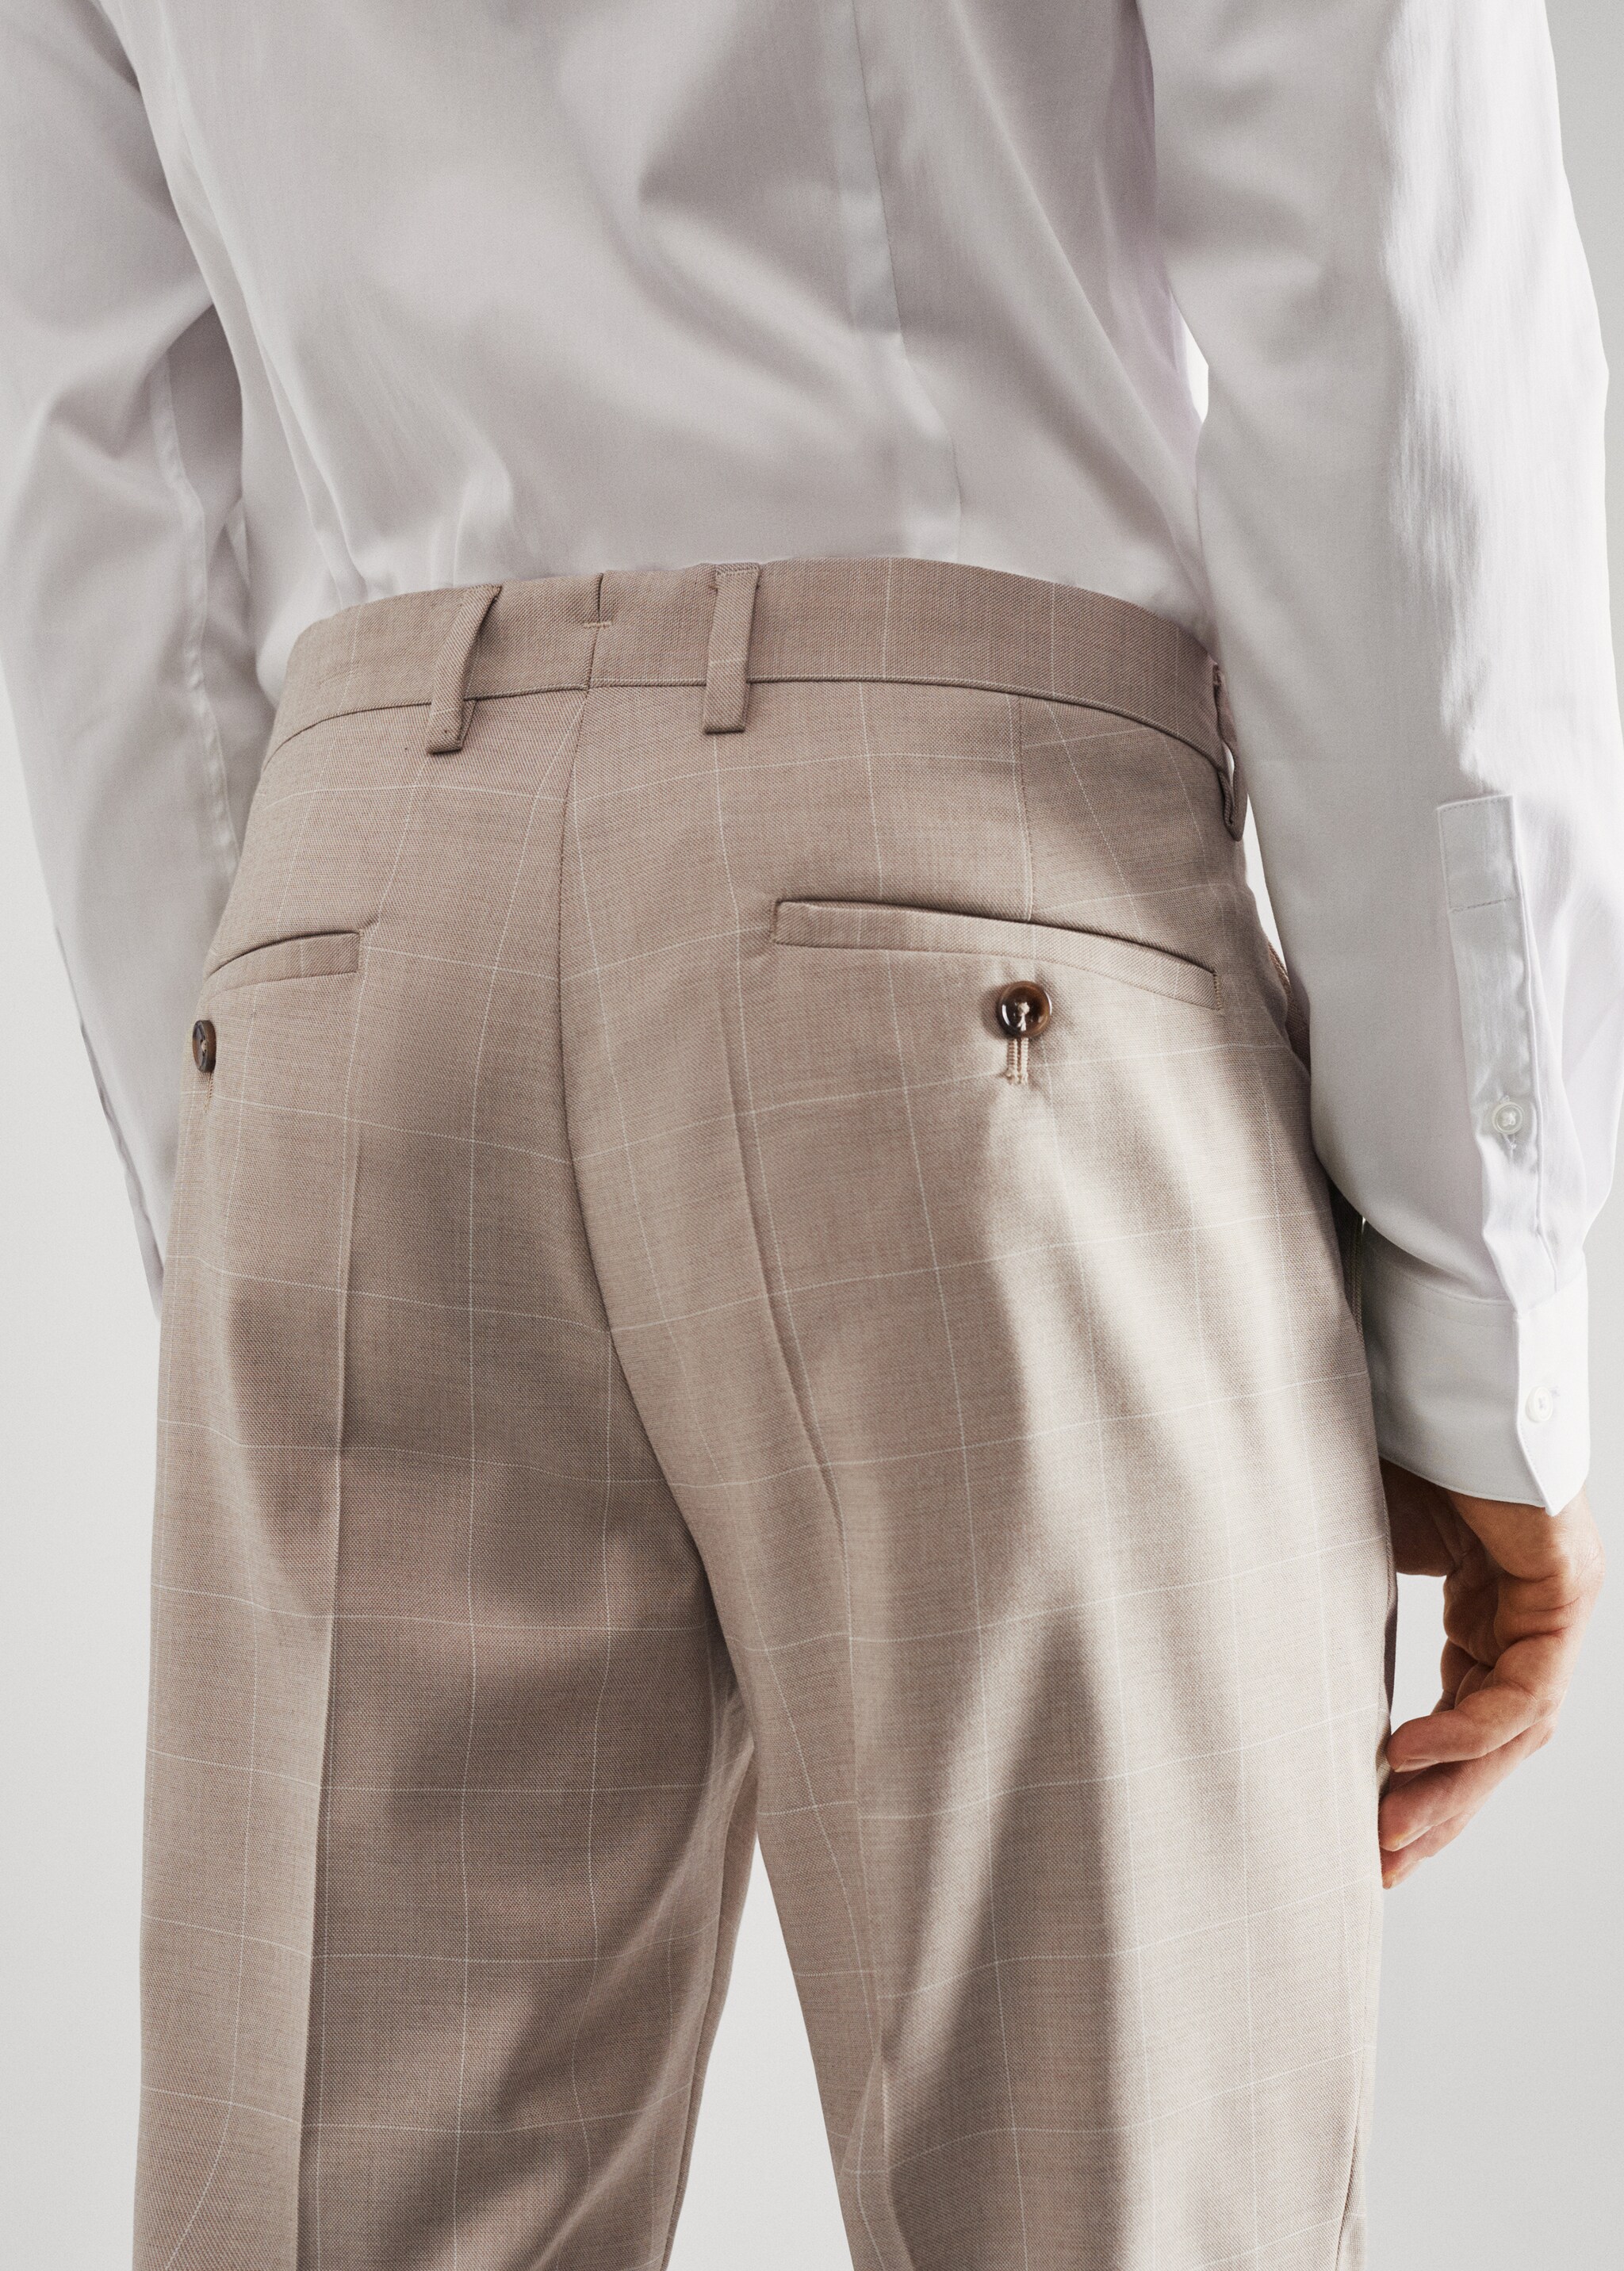 Spodnie garniturowe super slim fit w kratę - Szczegóły artykułu 4